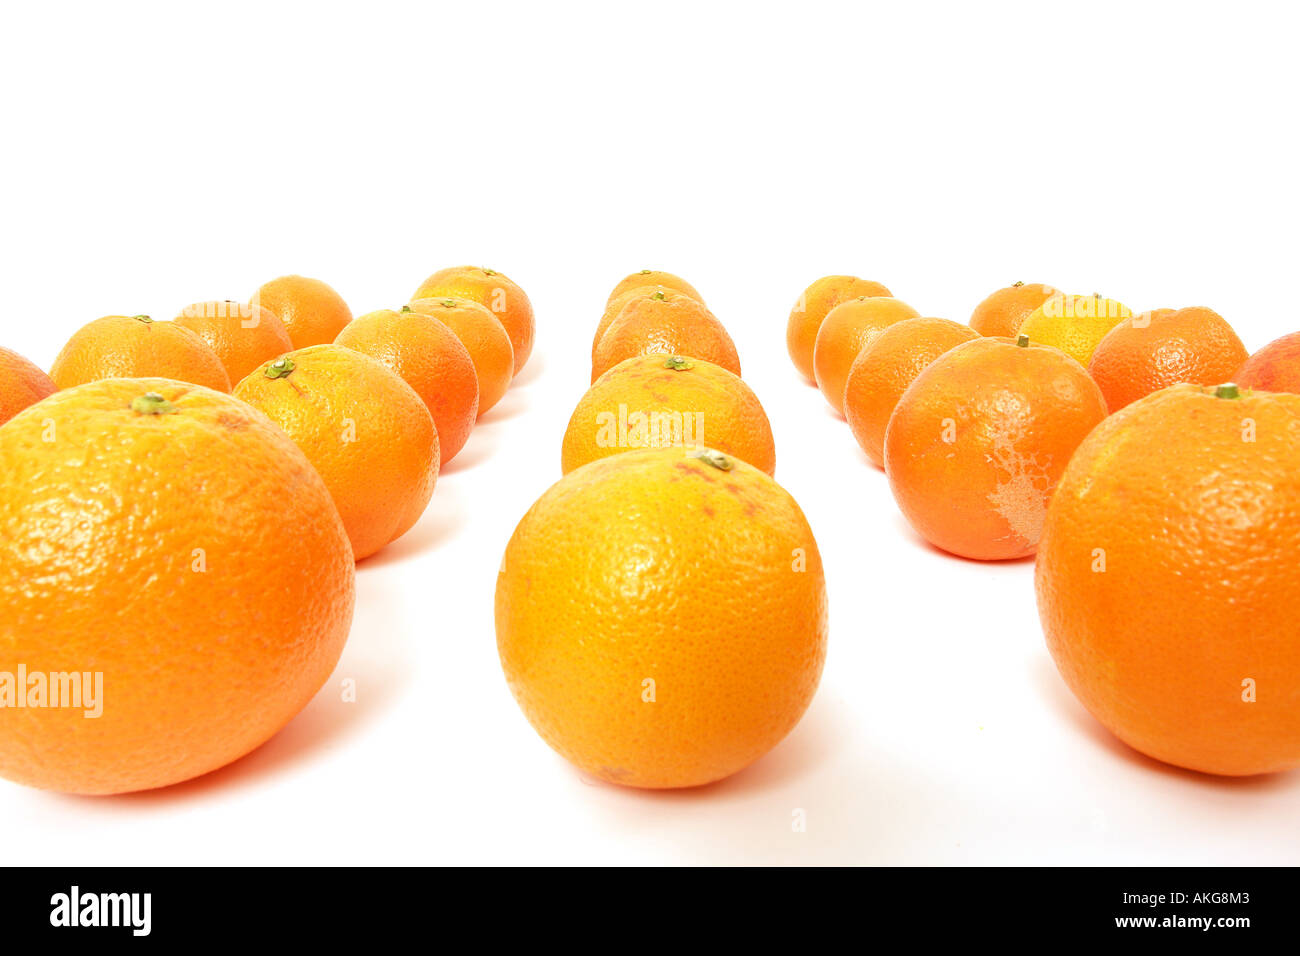 Les oranges disposées sur un fond blanc symbolisant l'équipe leadership Banque D'Images